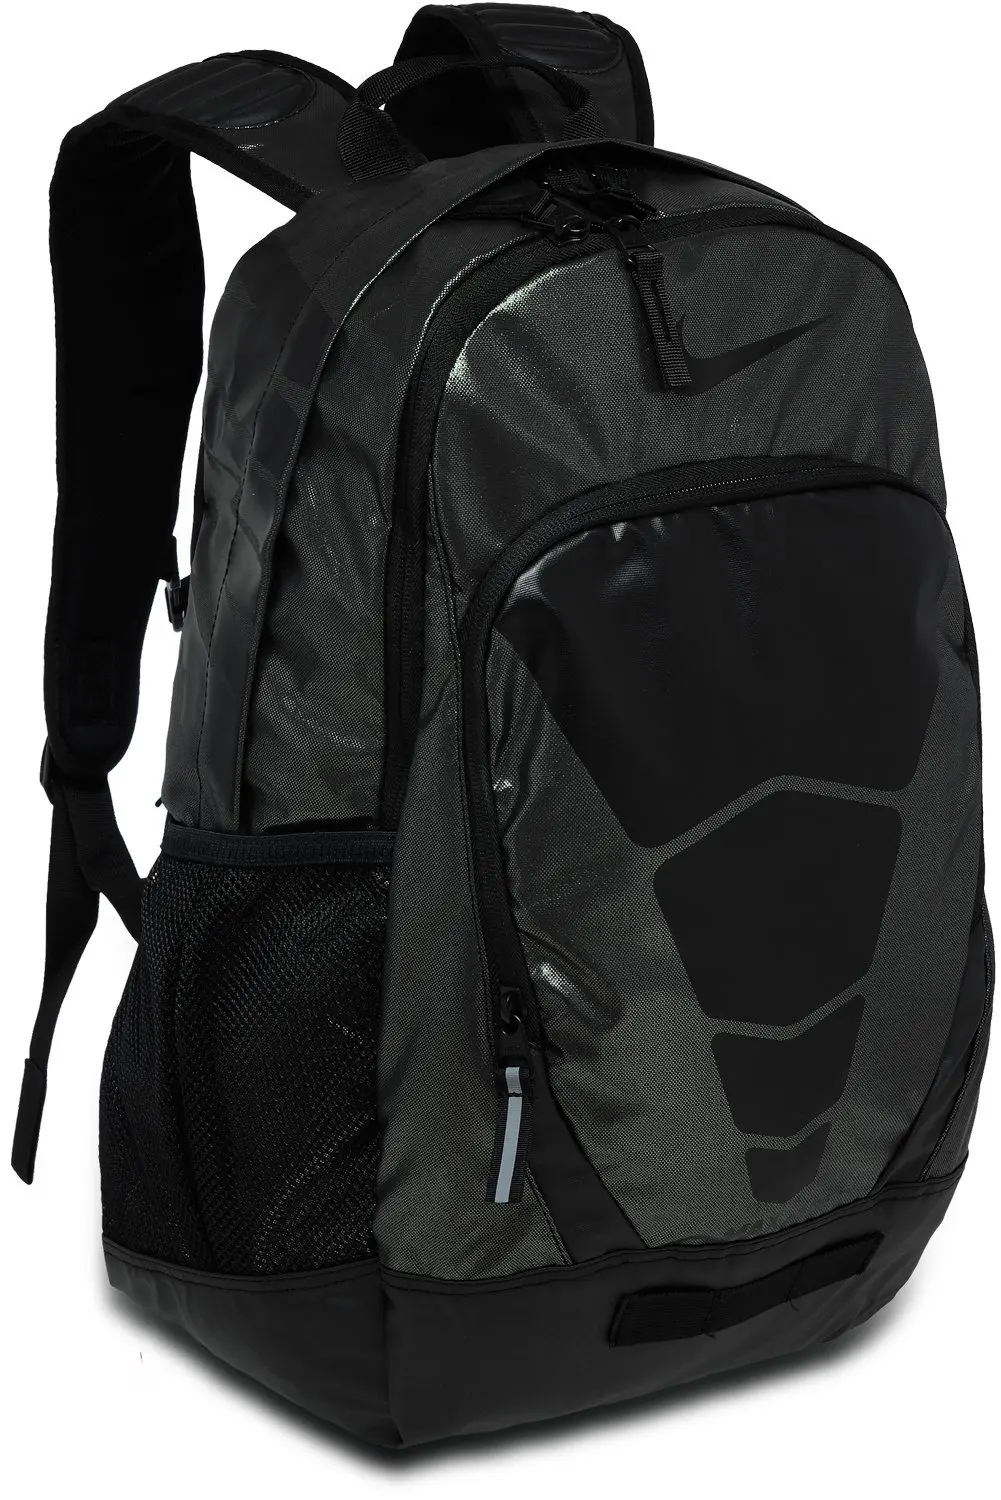 nike max air vapor backpack cheap